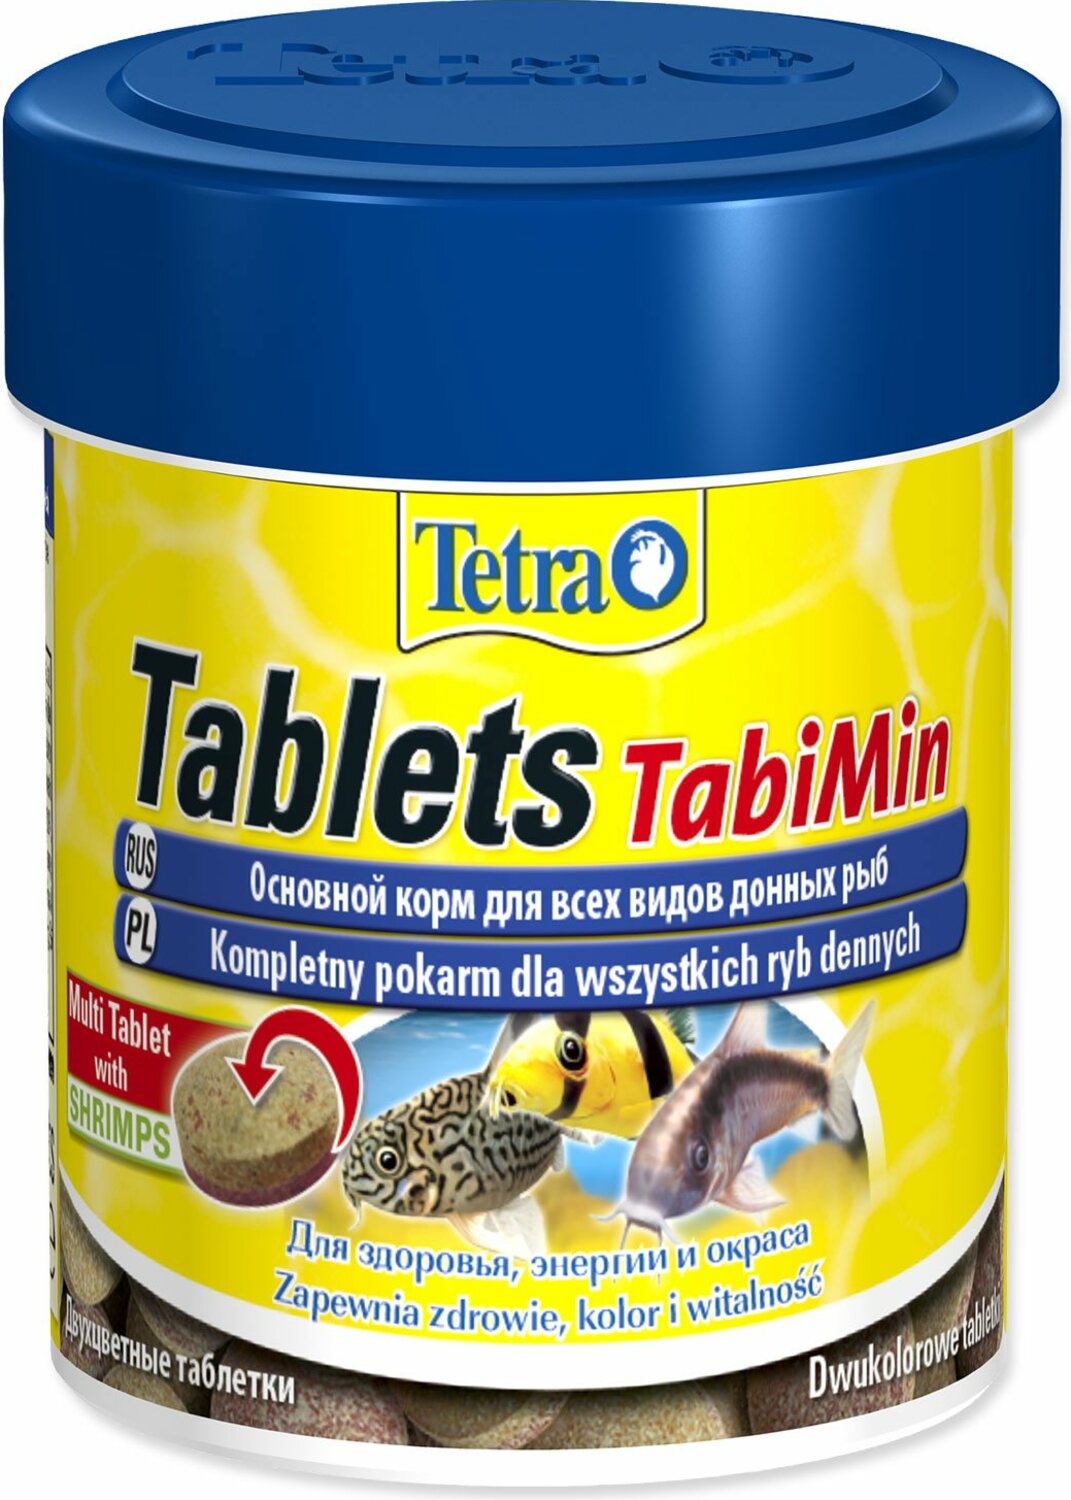 Krmivo Tetra Tabi Min Tablets 120 tbl.